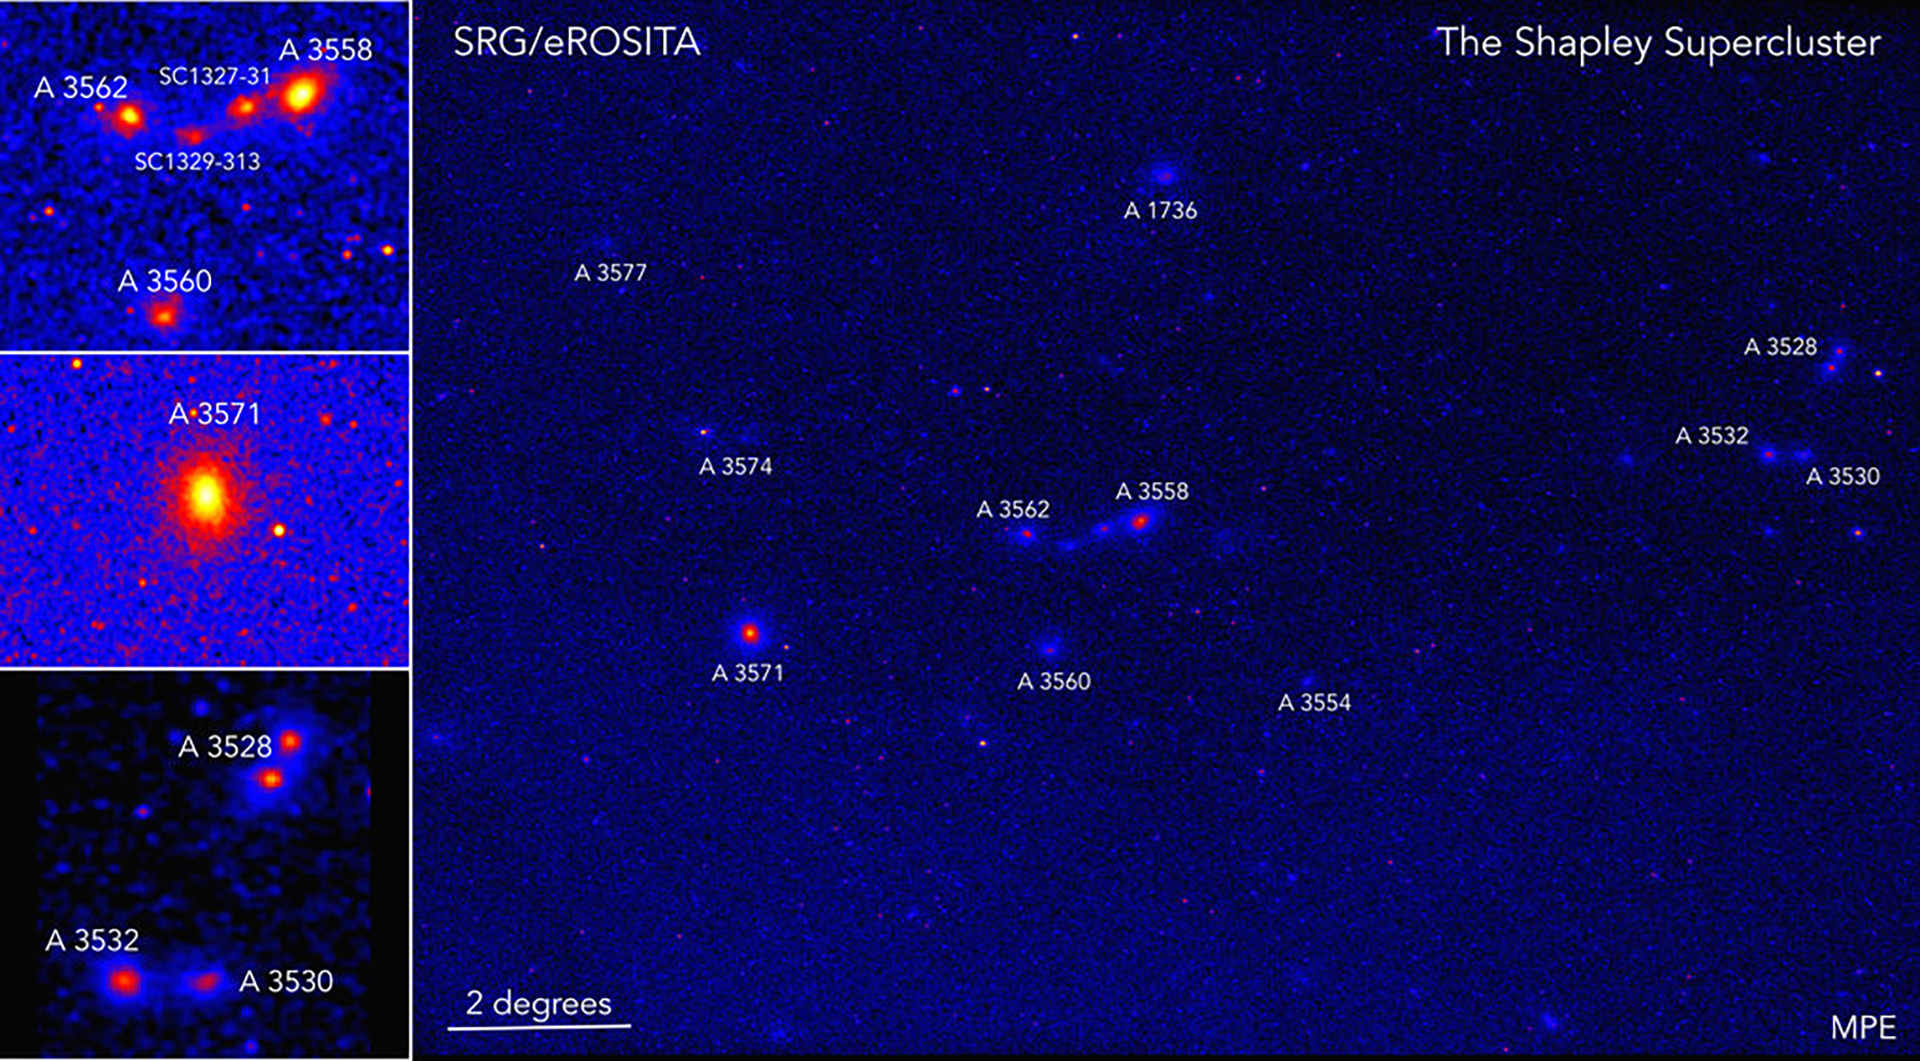 Los cúmulos y grupos de galaxias más prominentes, detectados por eROSITA como fuentes de rayos X extendidos, están marcados con sus nombres astronómicos (crédito: Esra Bulbul, Jeremy Sanders/MPE)